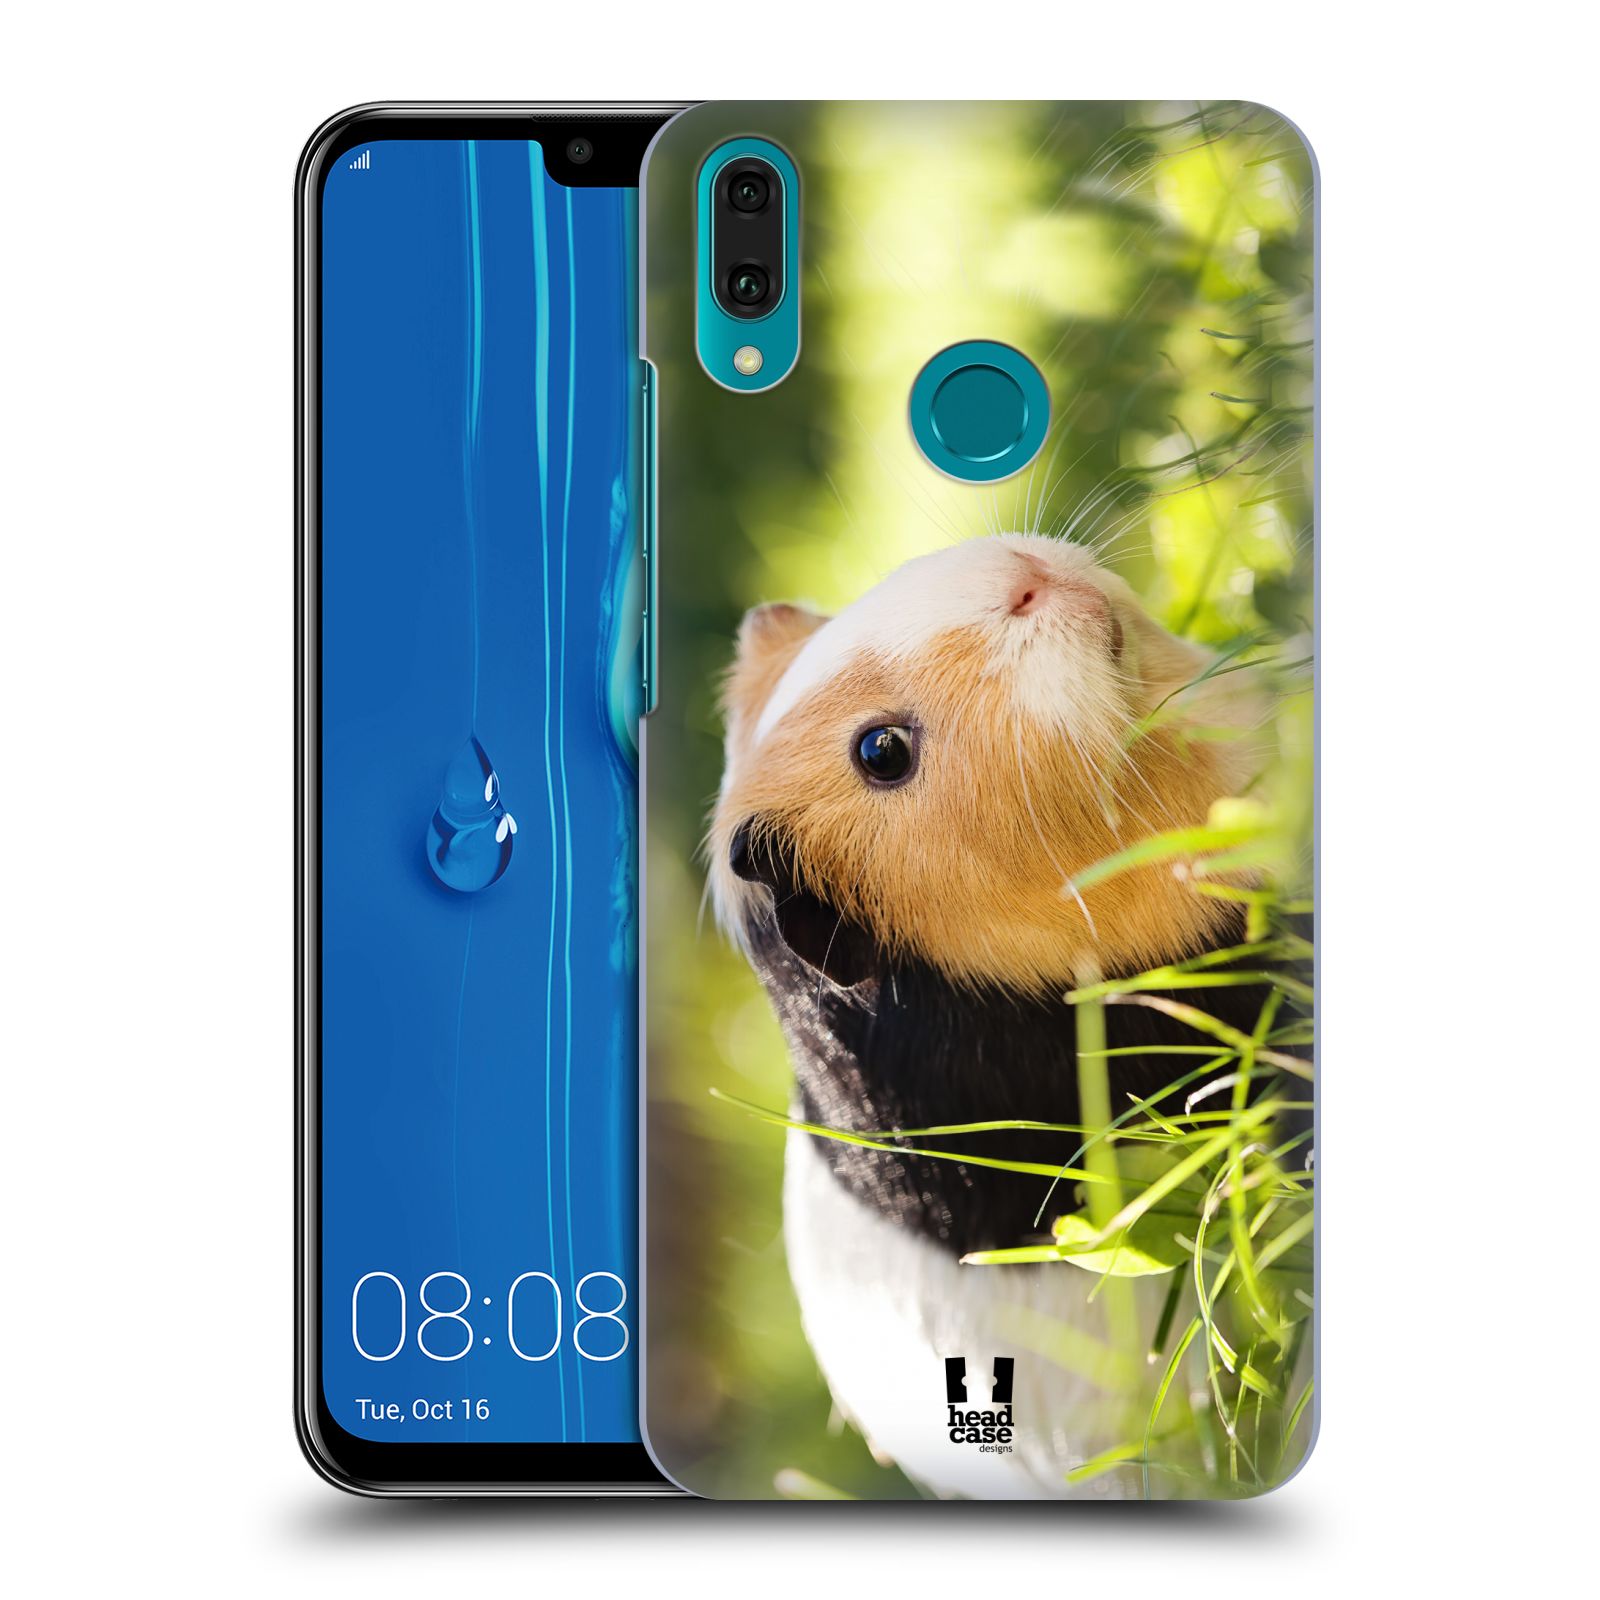 Pouzdro na mobil Huawei Y9 2019 - HEAD CASE - vzor slavná zvířata foto morče